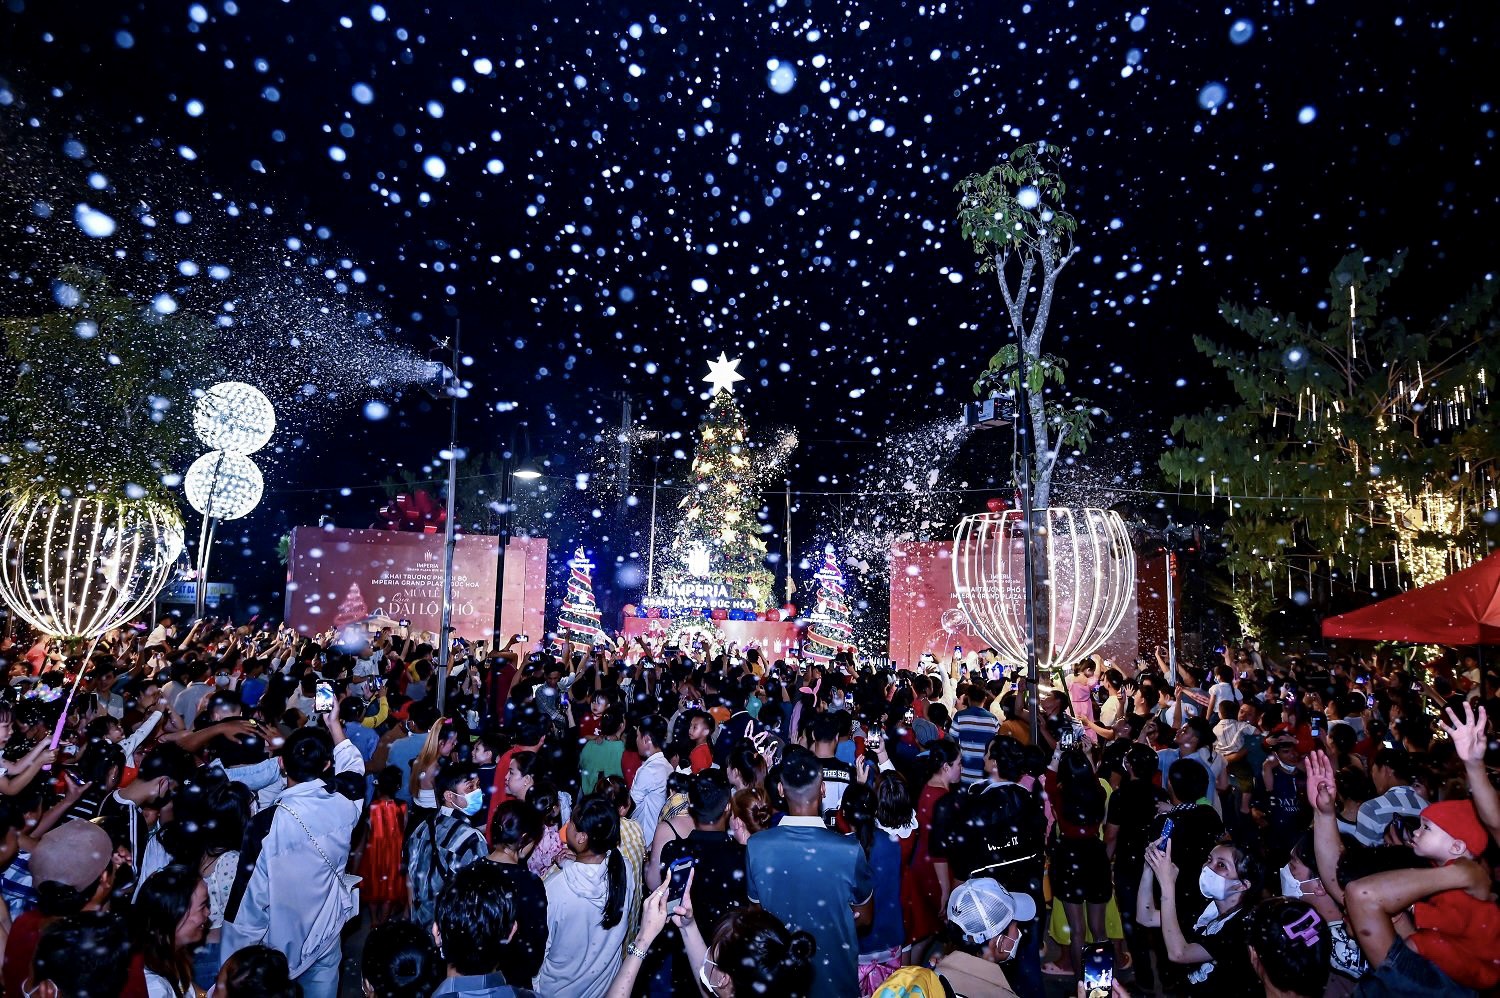 Sắc màu Noel lung linh trong chuỗi sự kiện lễ hội quy mô ở Long An - Ảnh 1.